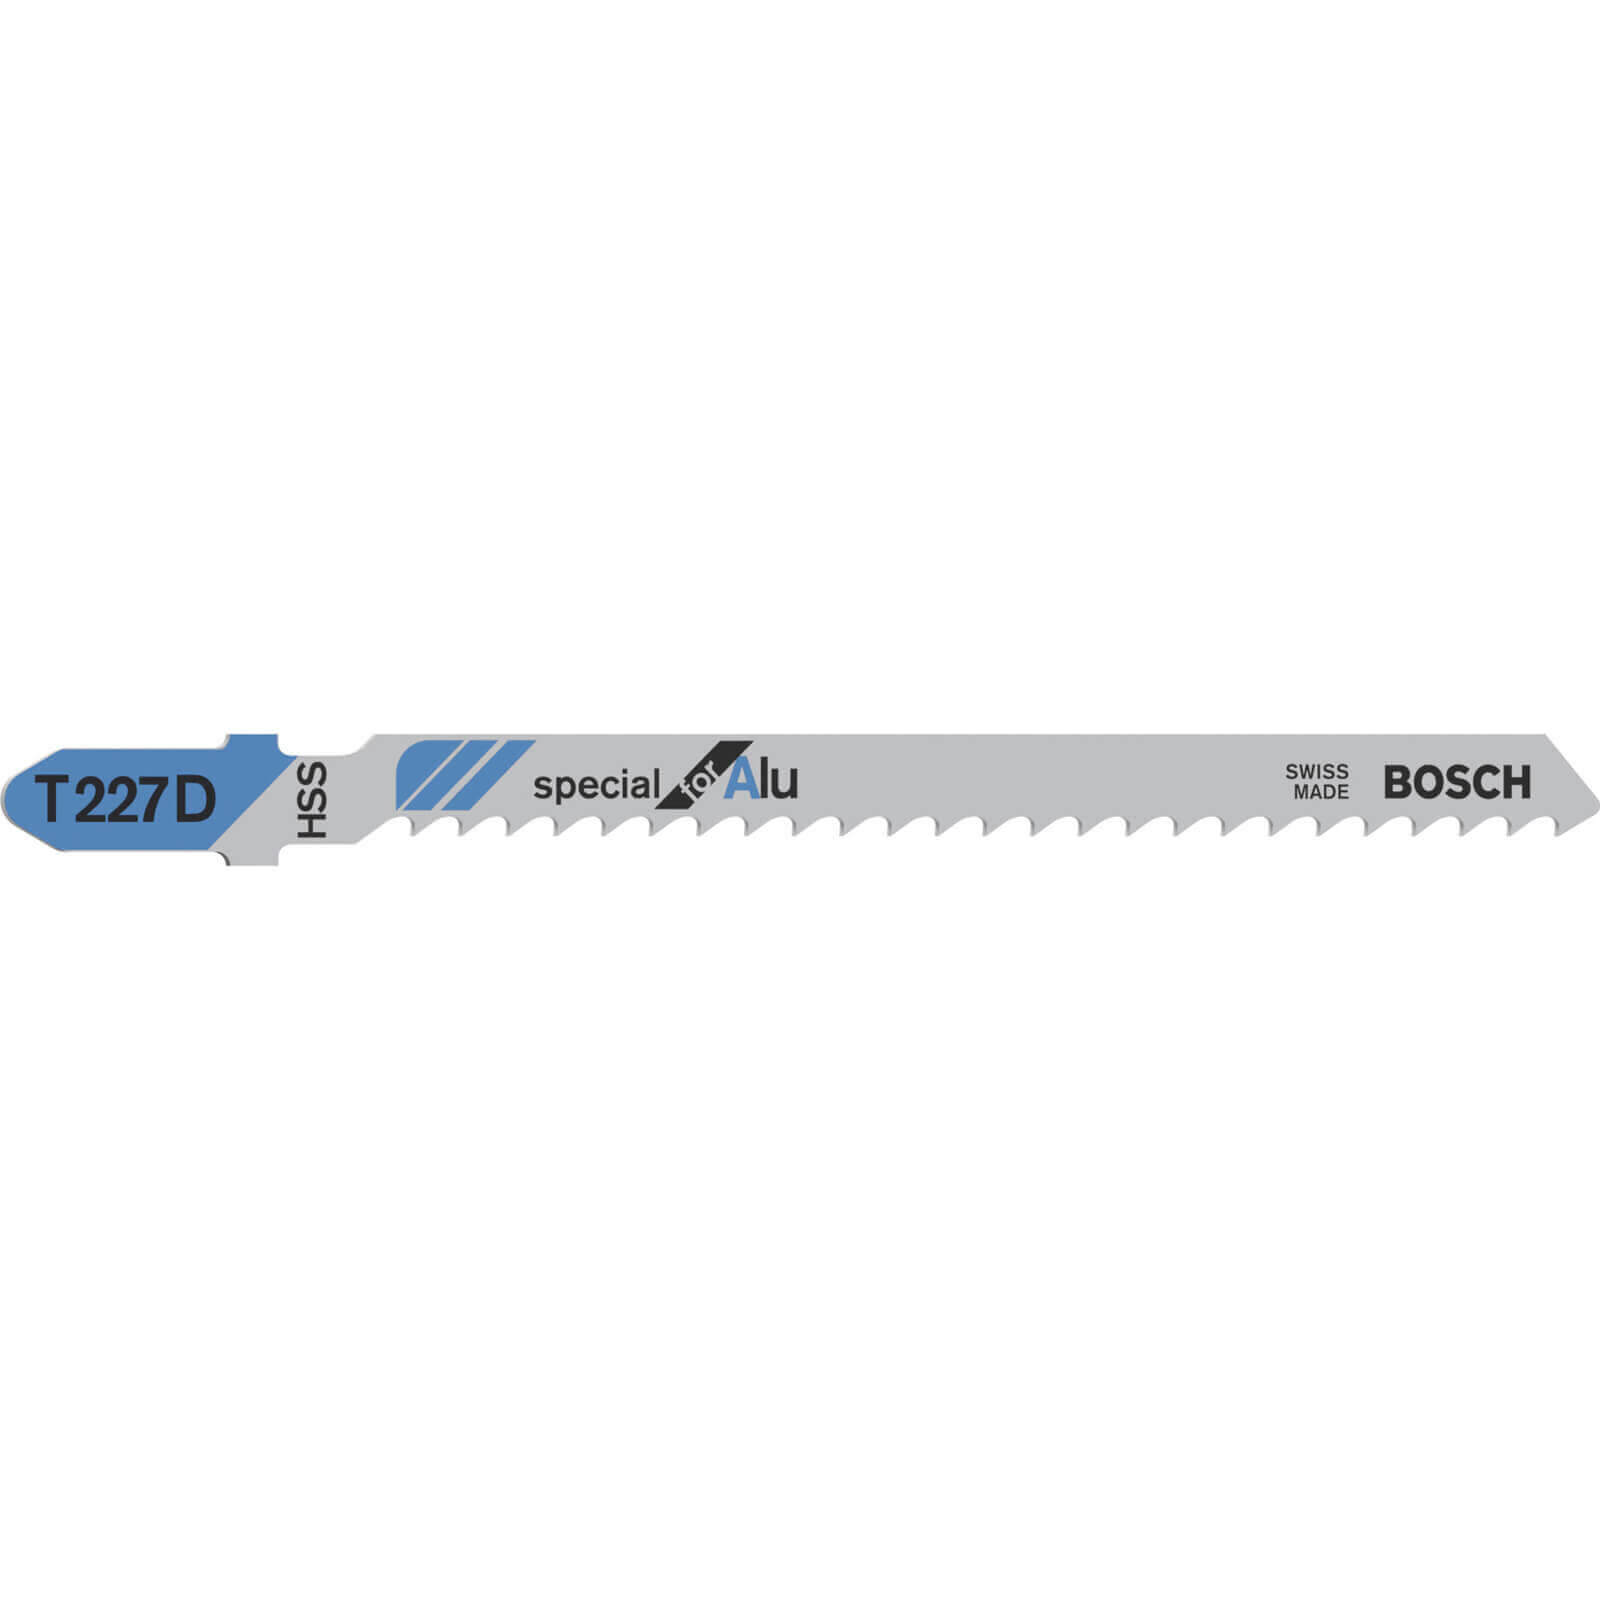 Image of Bosch T227 D Aluminium Cutting Jigsaw Blades Pack of 5